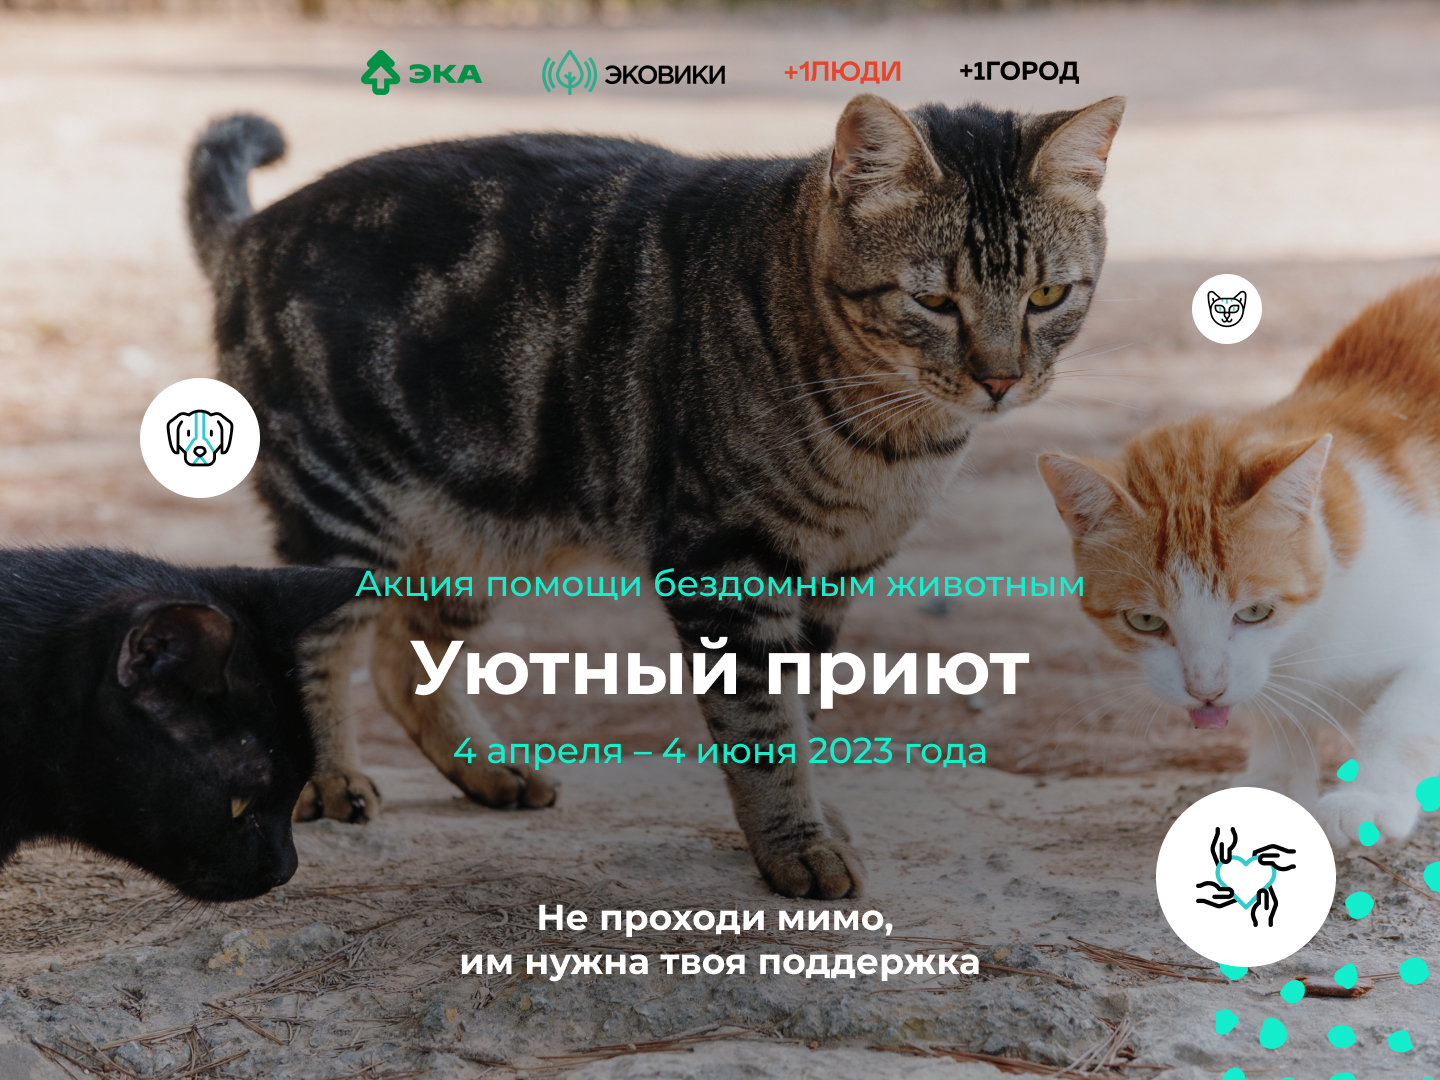 В Вологодской области стартовала акция помощи бездомным животным.